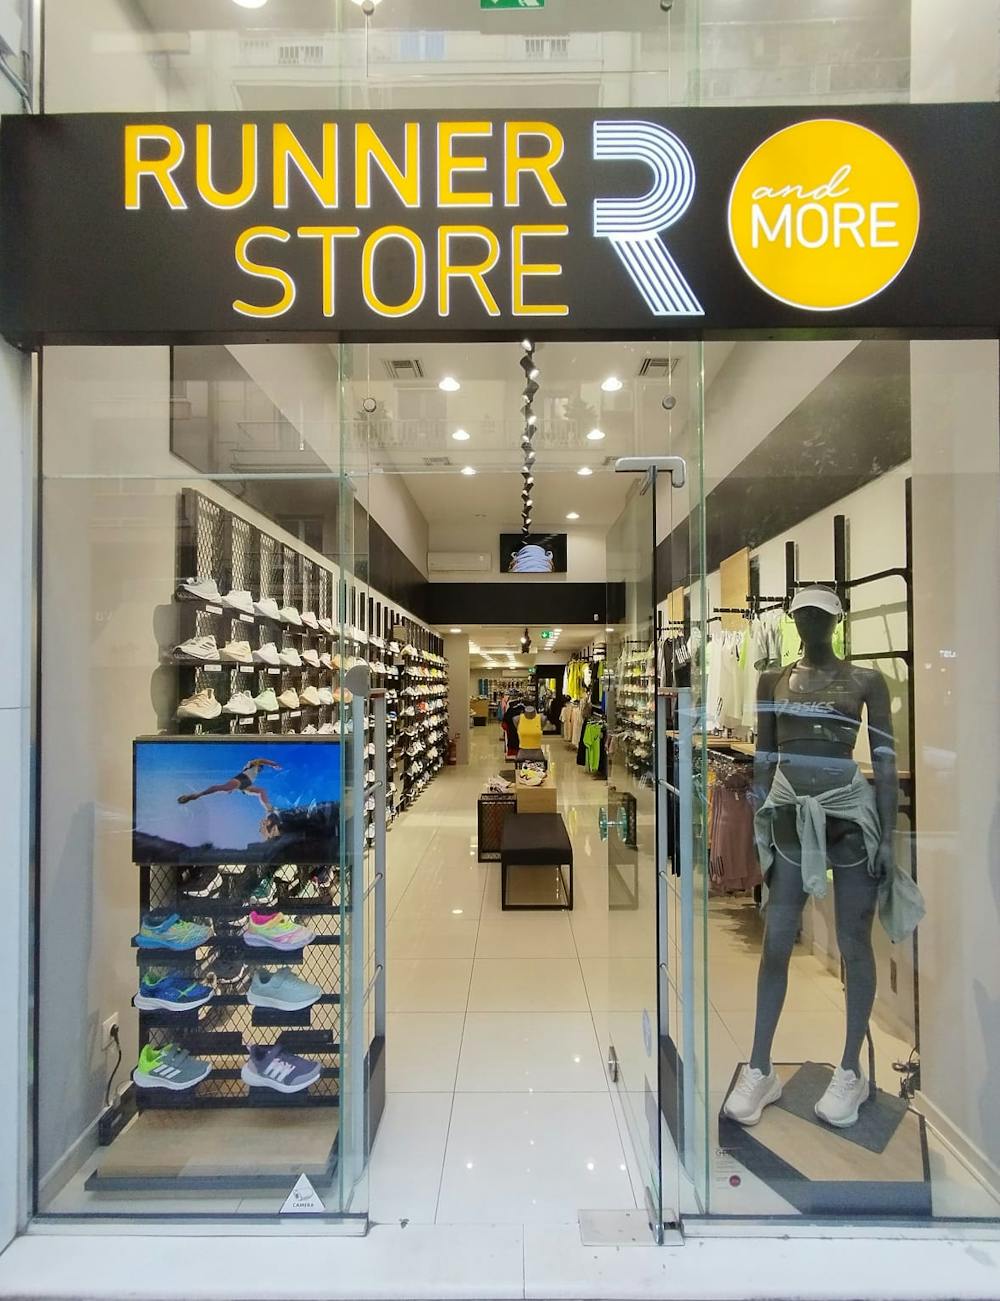 Νέο Κατάστημα Runner Store στη Θεσσαλονίκη! runbeat.gr 